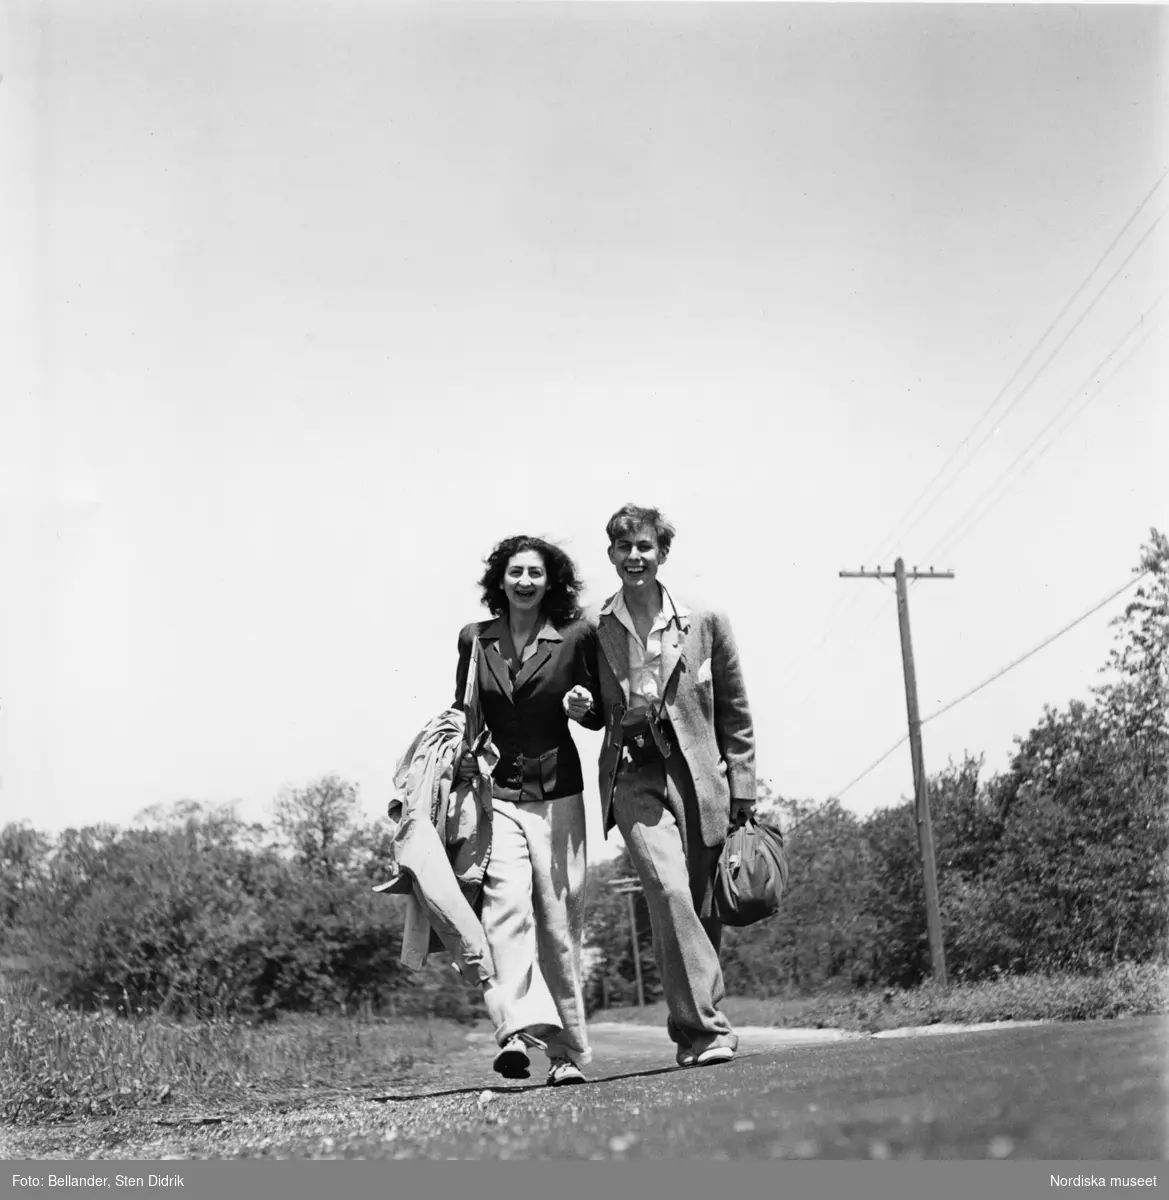 Fotografen och hans första hustru Birgitta promenerar arm i arm på en landsväg i USA.